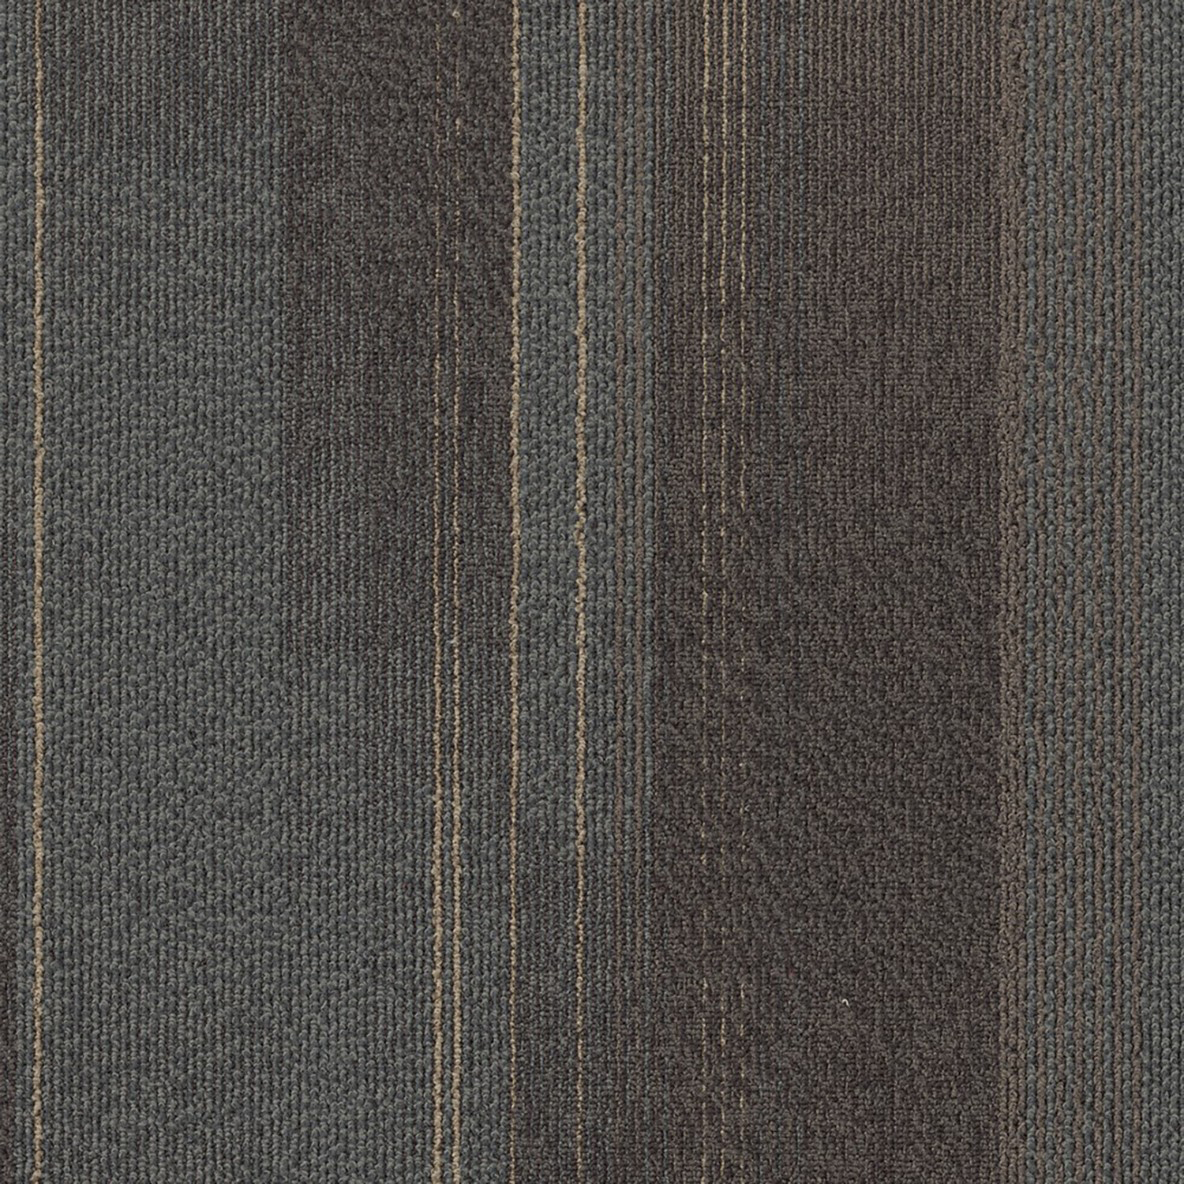 Diversions Commercial Carpet Tile .42 Inch x 50x50 cm per Tile Sepia color close up